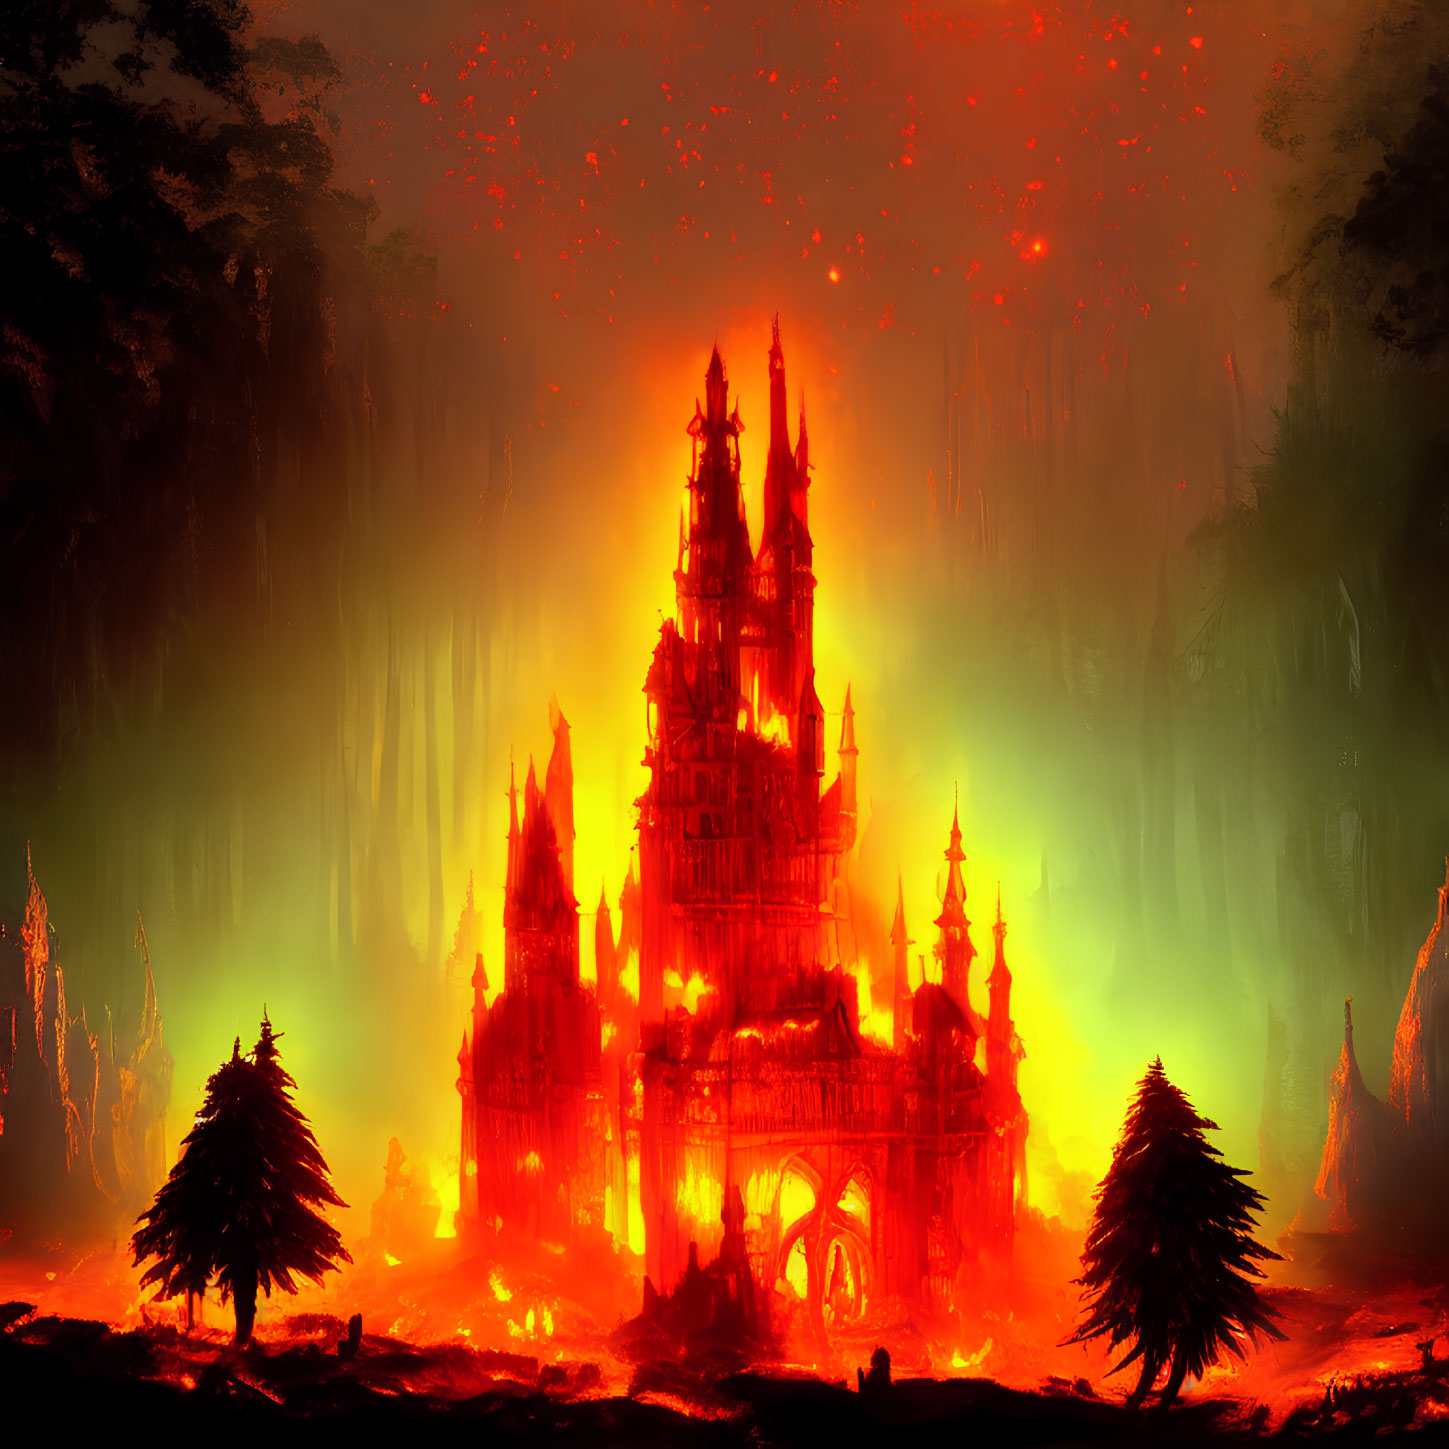 Glowing castle in fiery landscape with dark trees